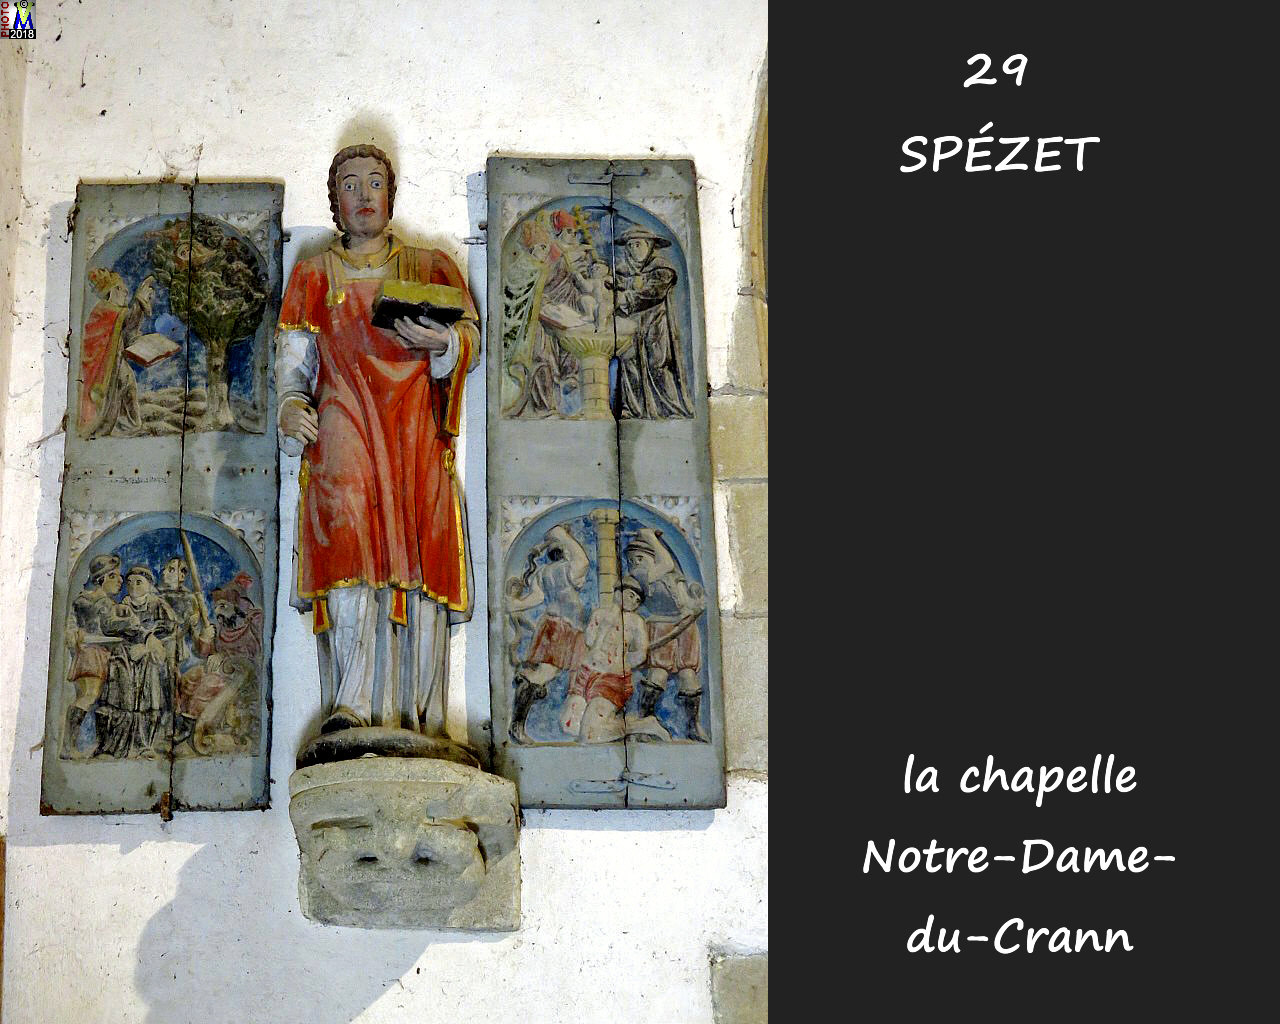 29SPEZET_chapelleNDC_234.jpg